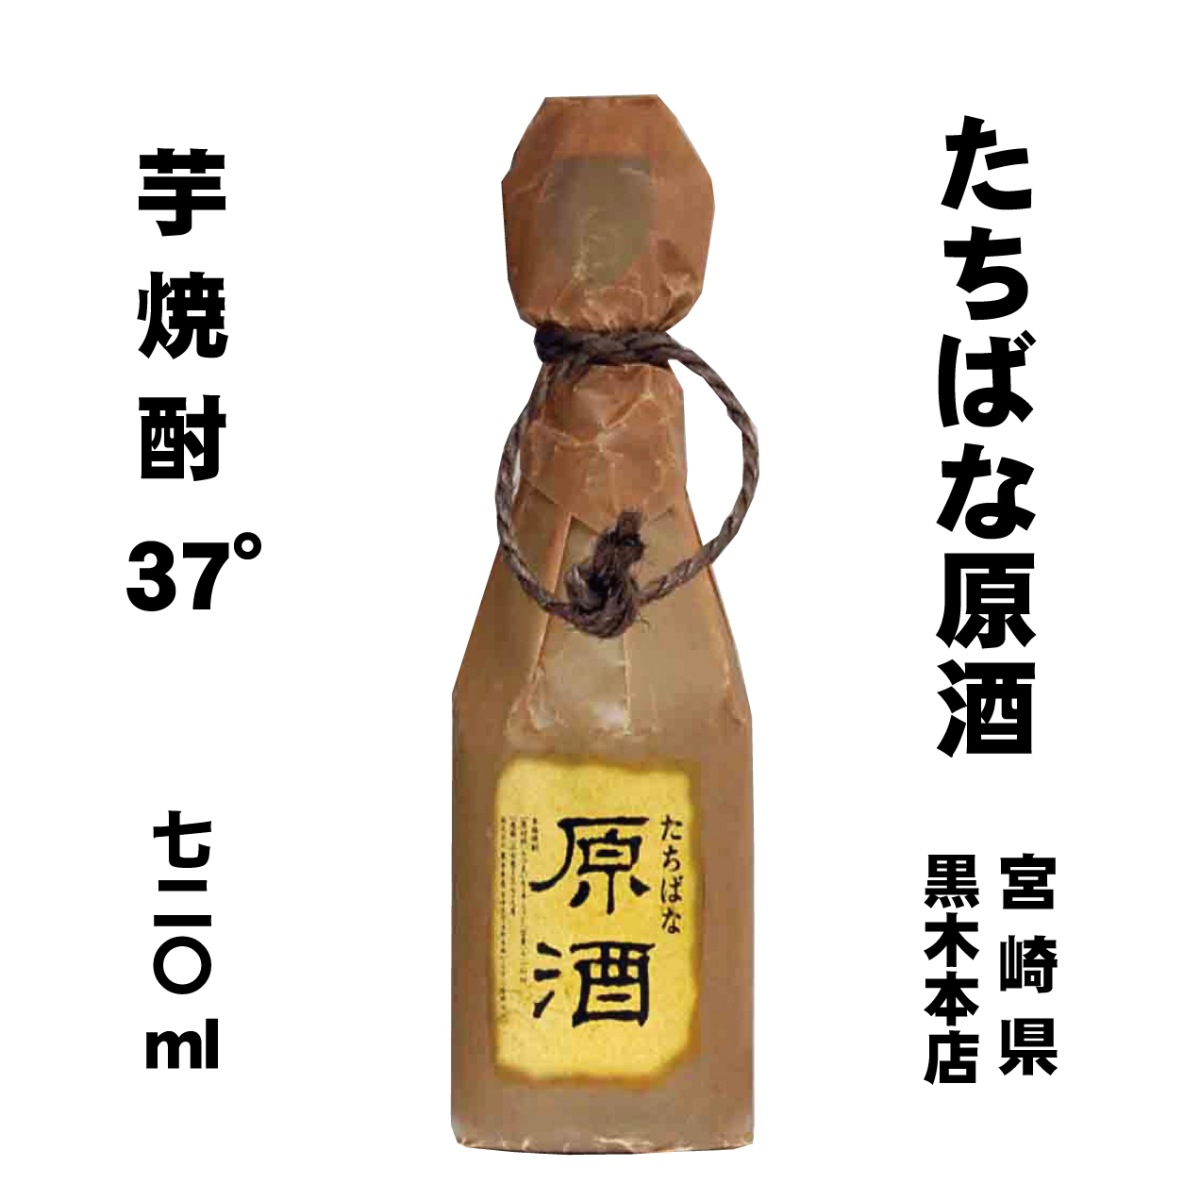 黒木本店 芋焼酎 橘 原酒 37度 720ml × 1本 瓶 芋焼酎の商品画像